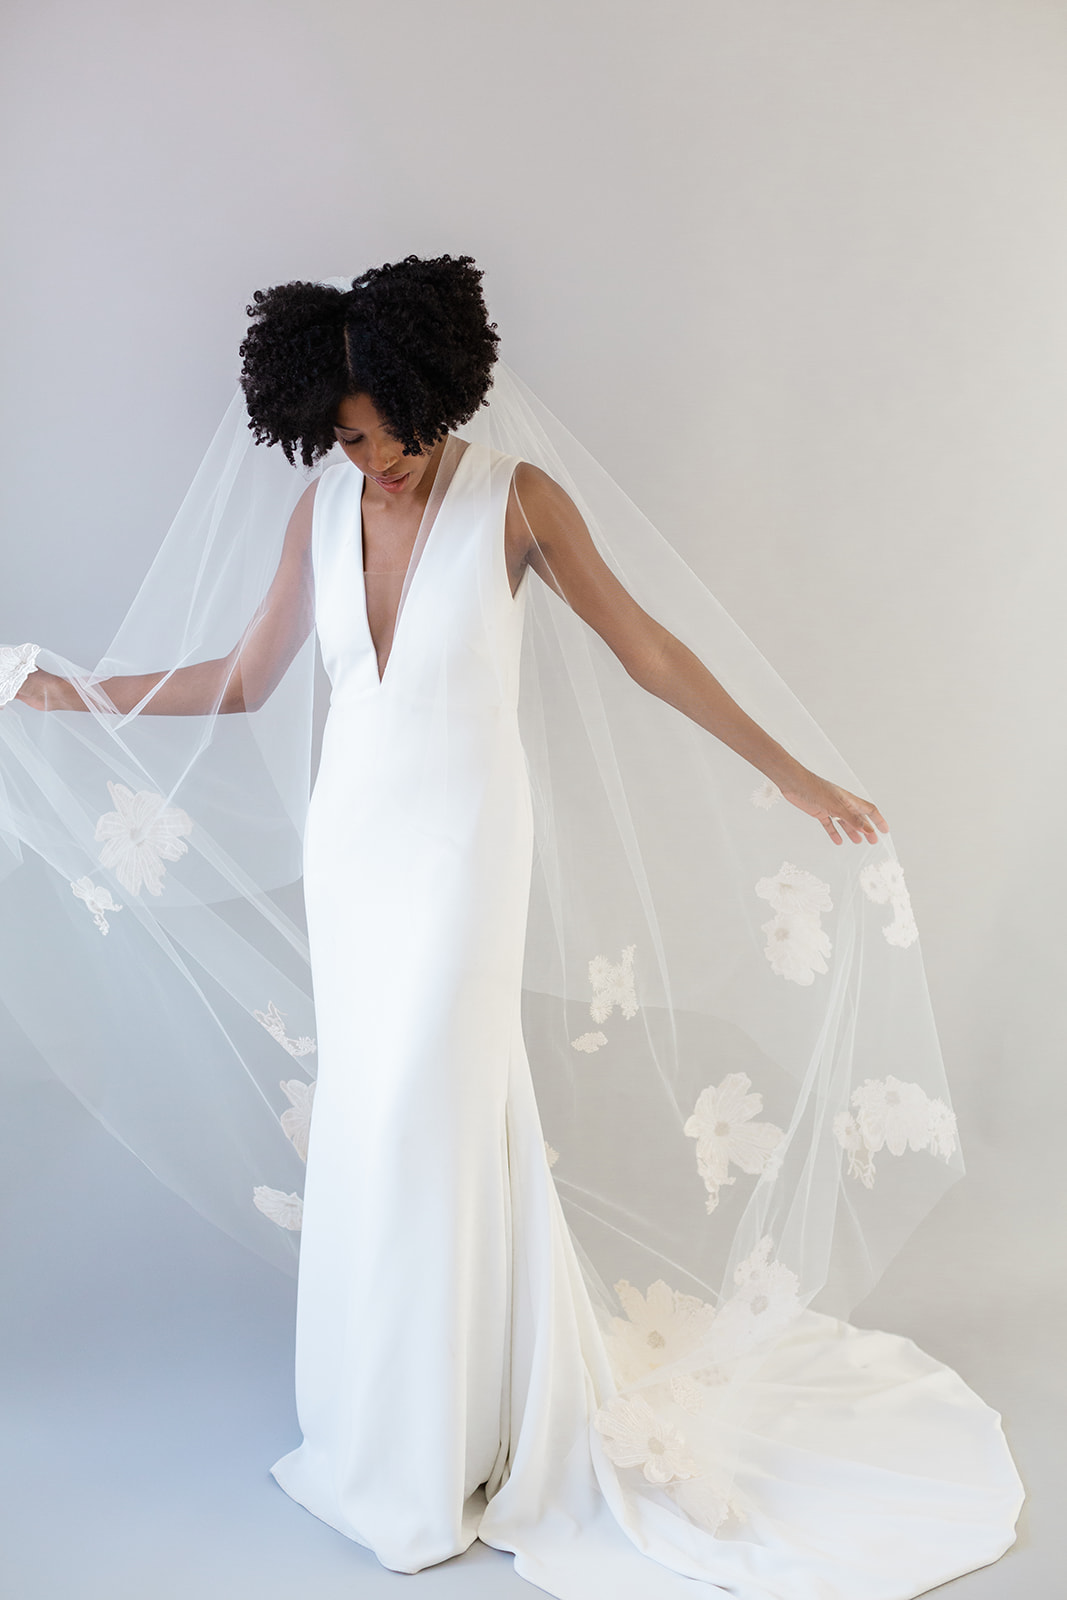 Shop Celeste New York wedding veils — Celeste New York